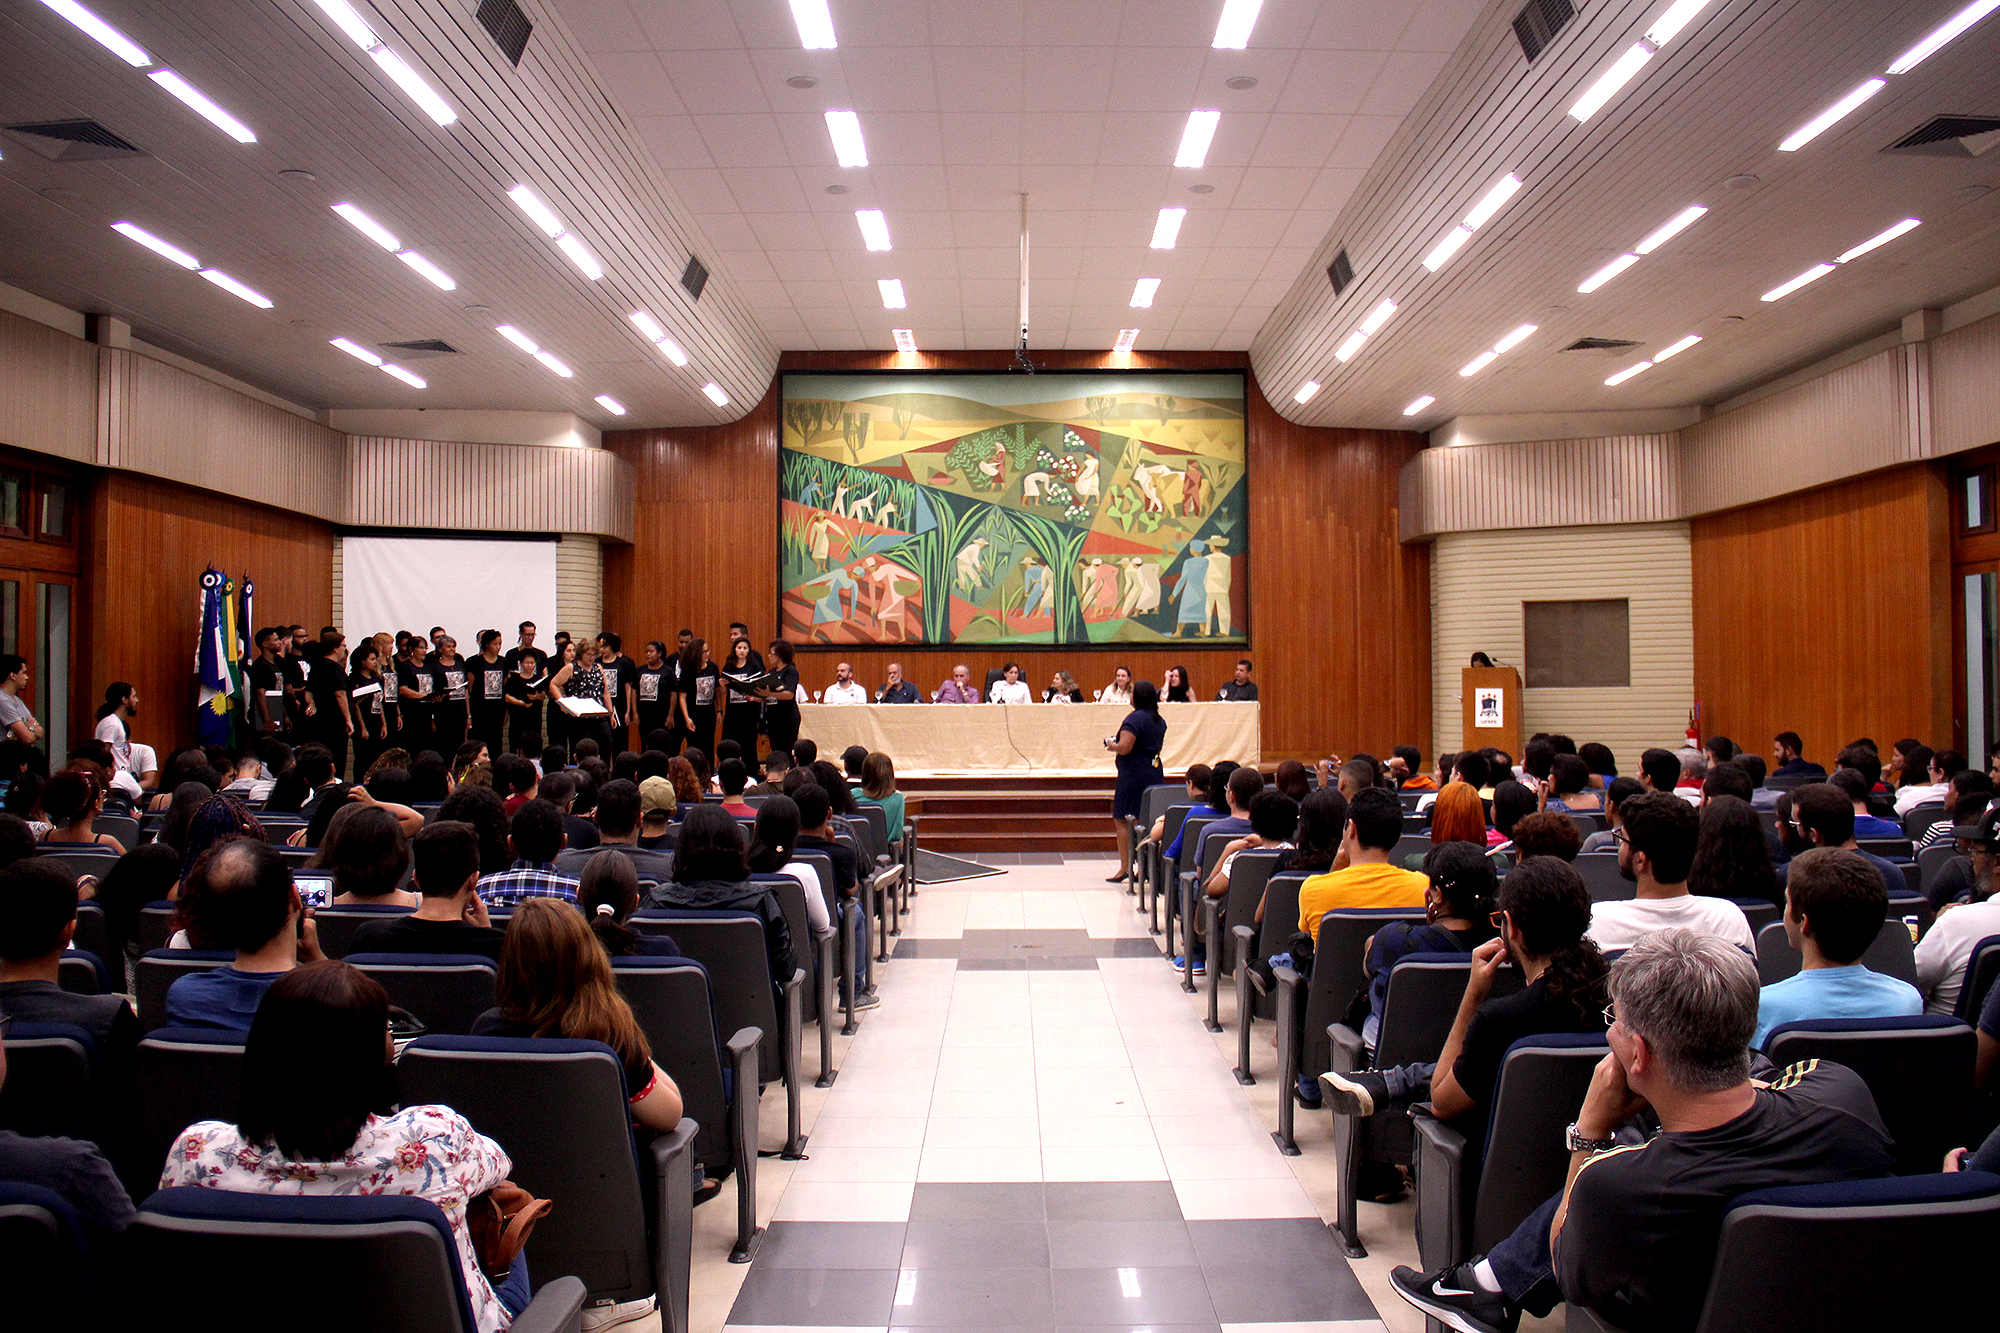 Imagem do Salão Nobre da UFRPE durante aula inaugural. Estudantes sentados e mesa das autoridades ao fundo